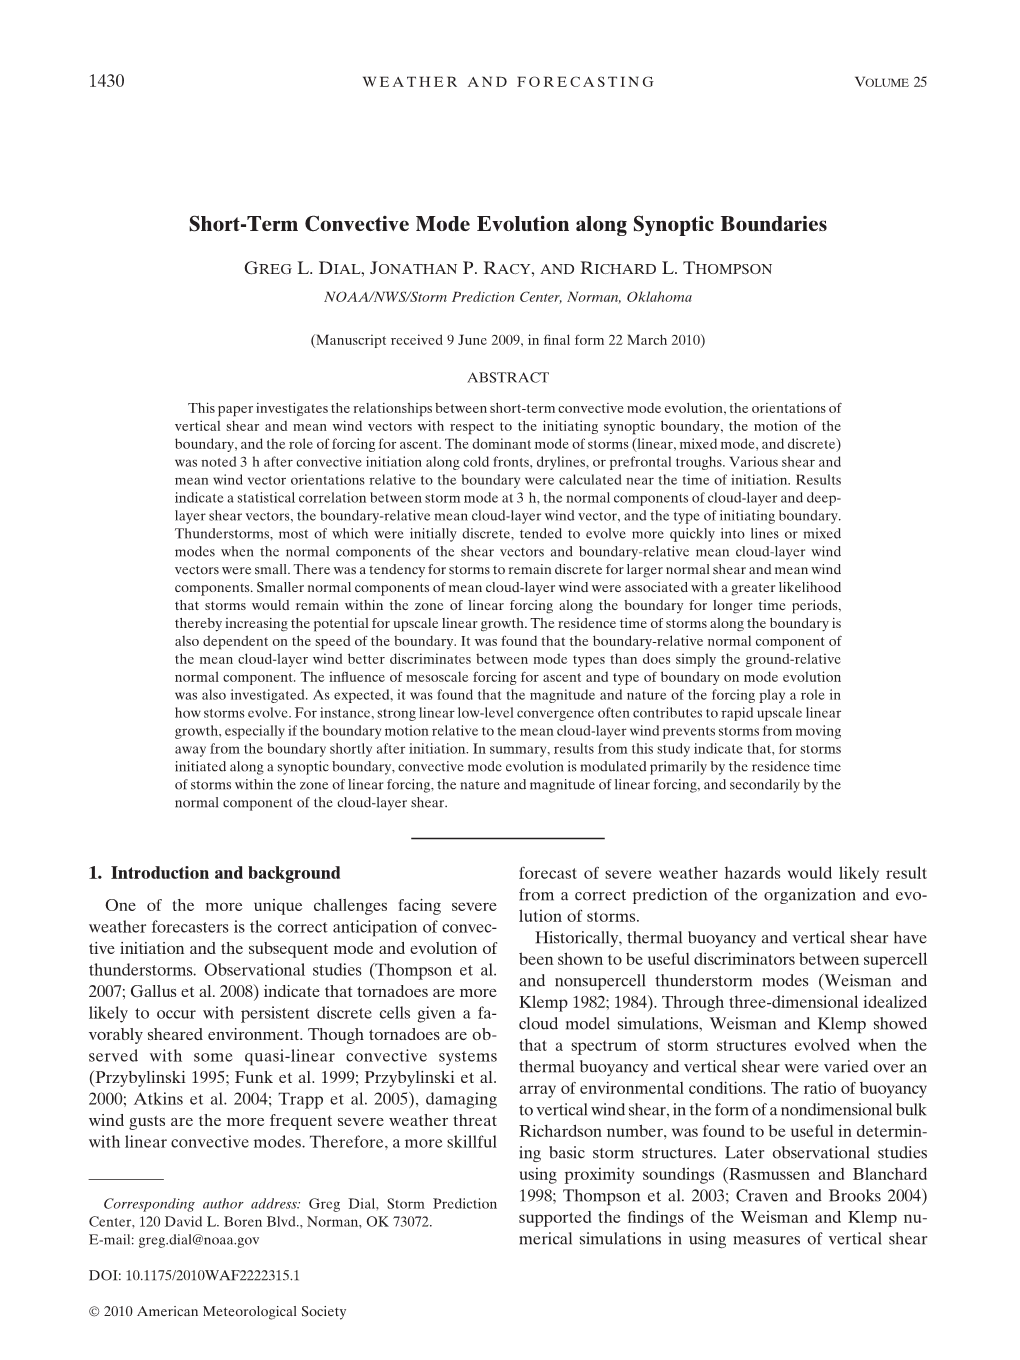 Short-Term Convective Mode Evolution Along Synoptic Boundaries